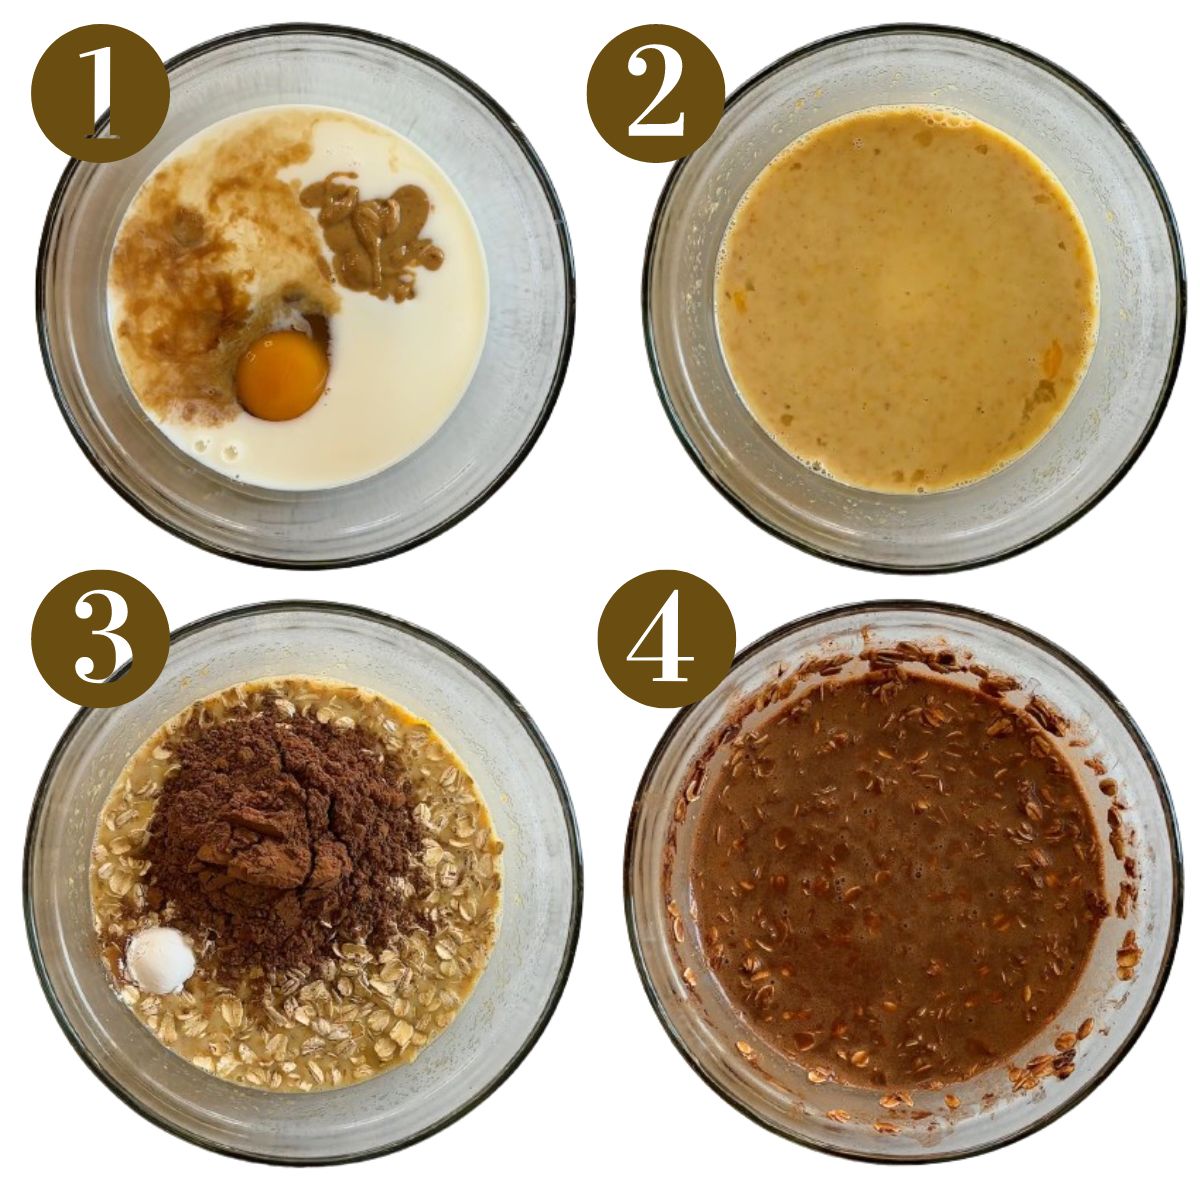 Steps to make chocolate baked oatmeal.